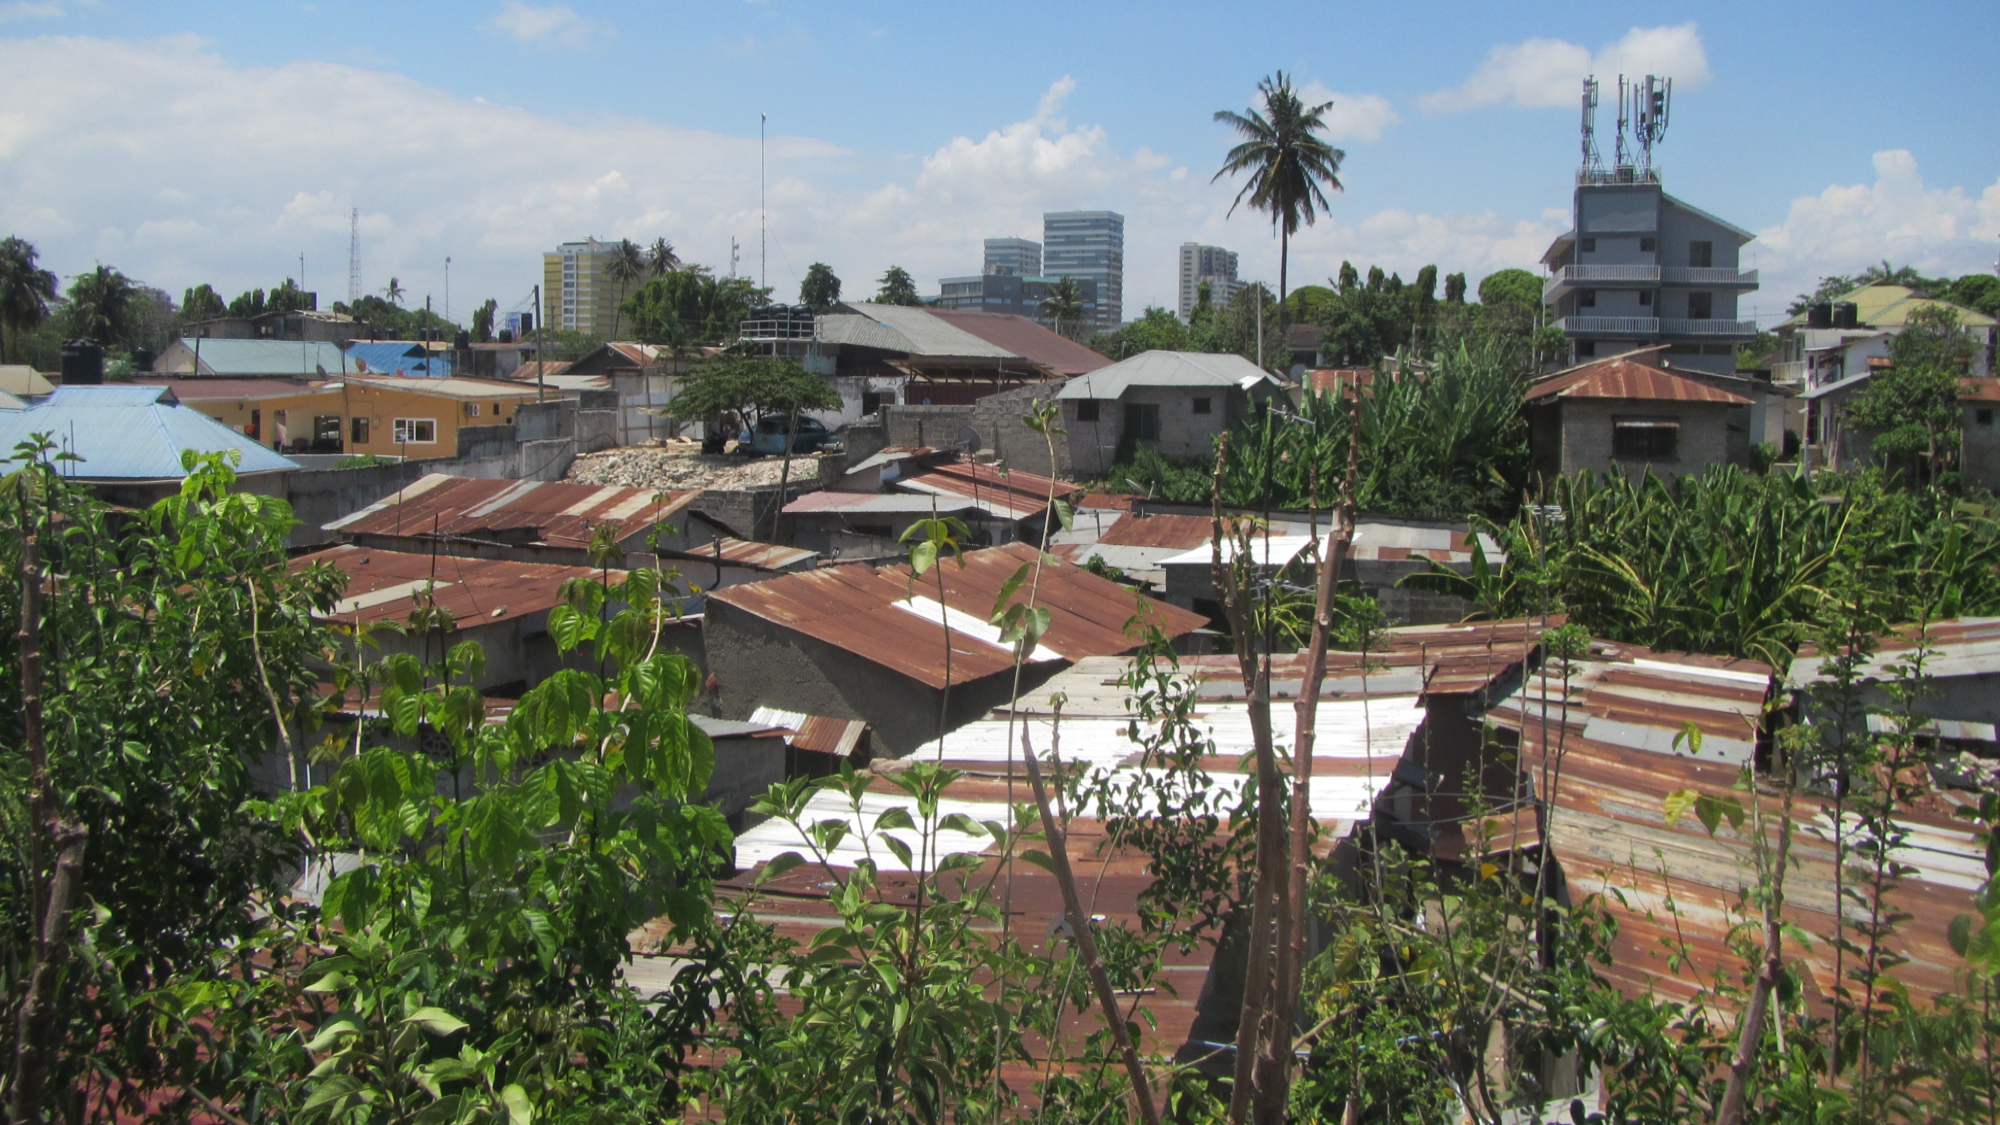 Image of Dar es Salaam roof tops